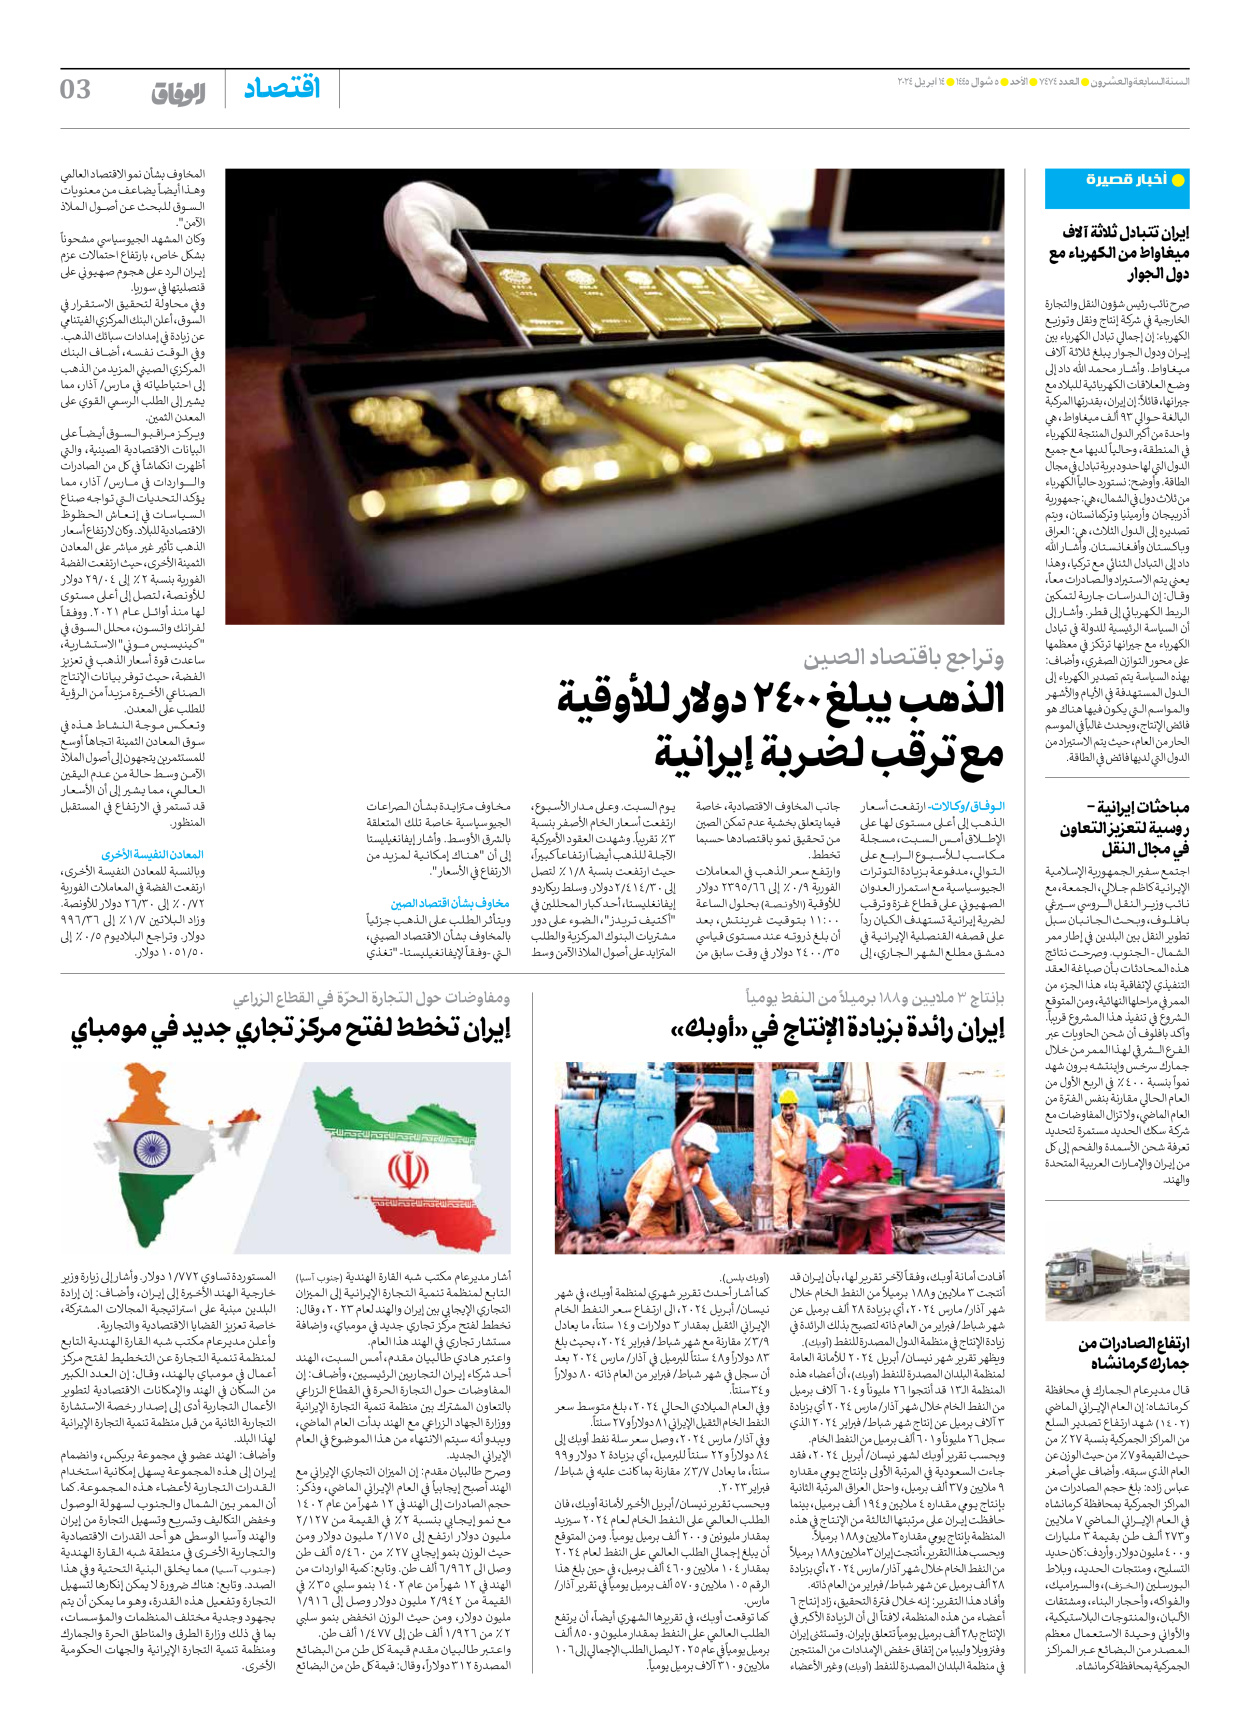 صحیفة ایران الدولیة الوفاق - العدد سبعة آلاف وأربعمائة وأربعة وسبعون - ١٤ أبريل ٢٠٢٤ - الصفحة ۳